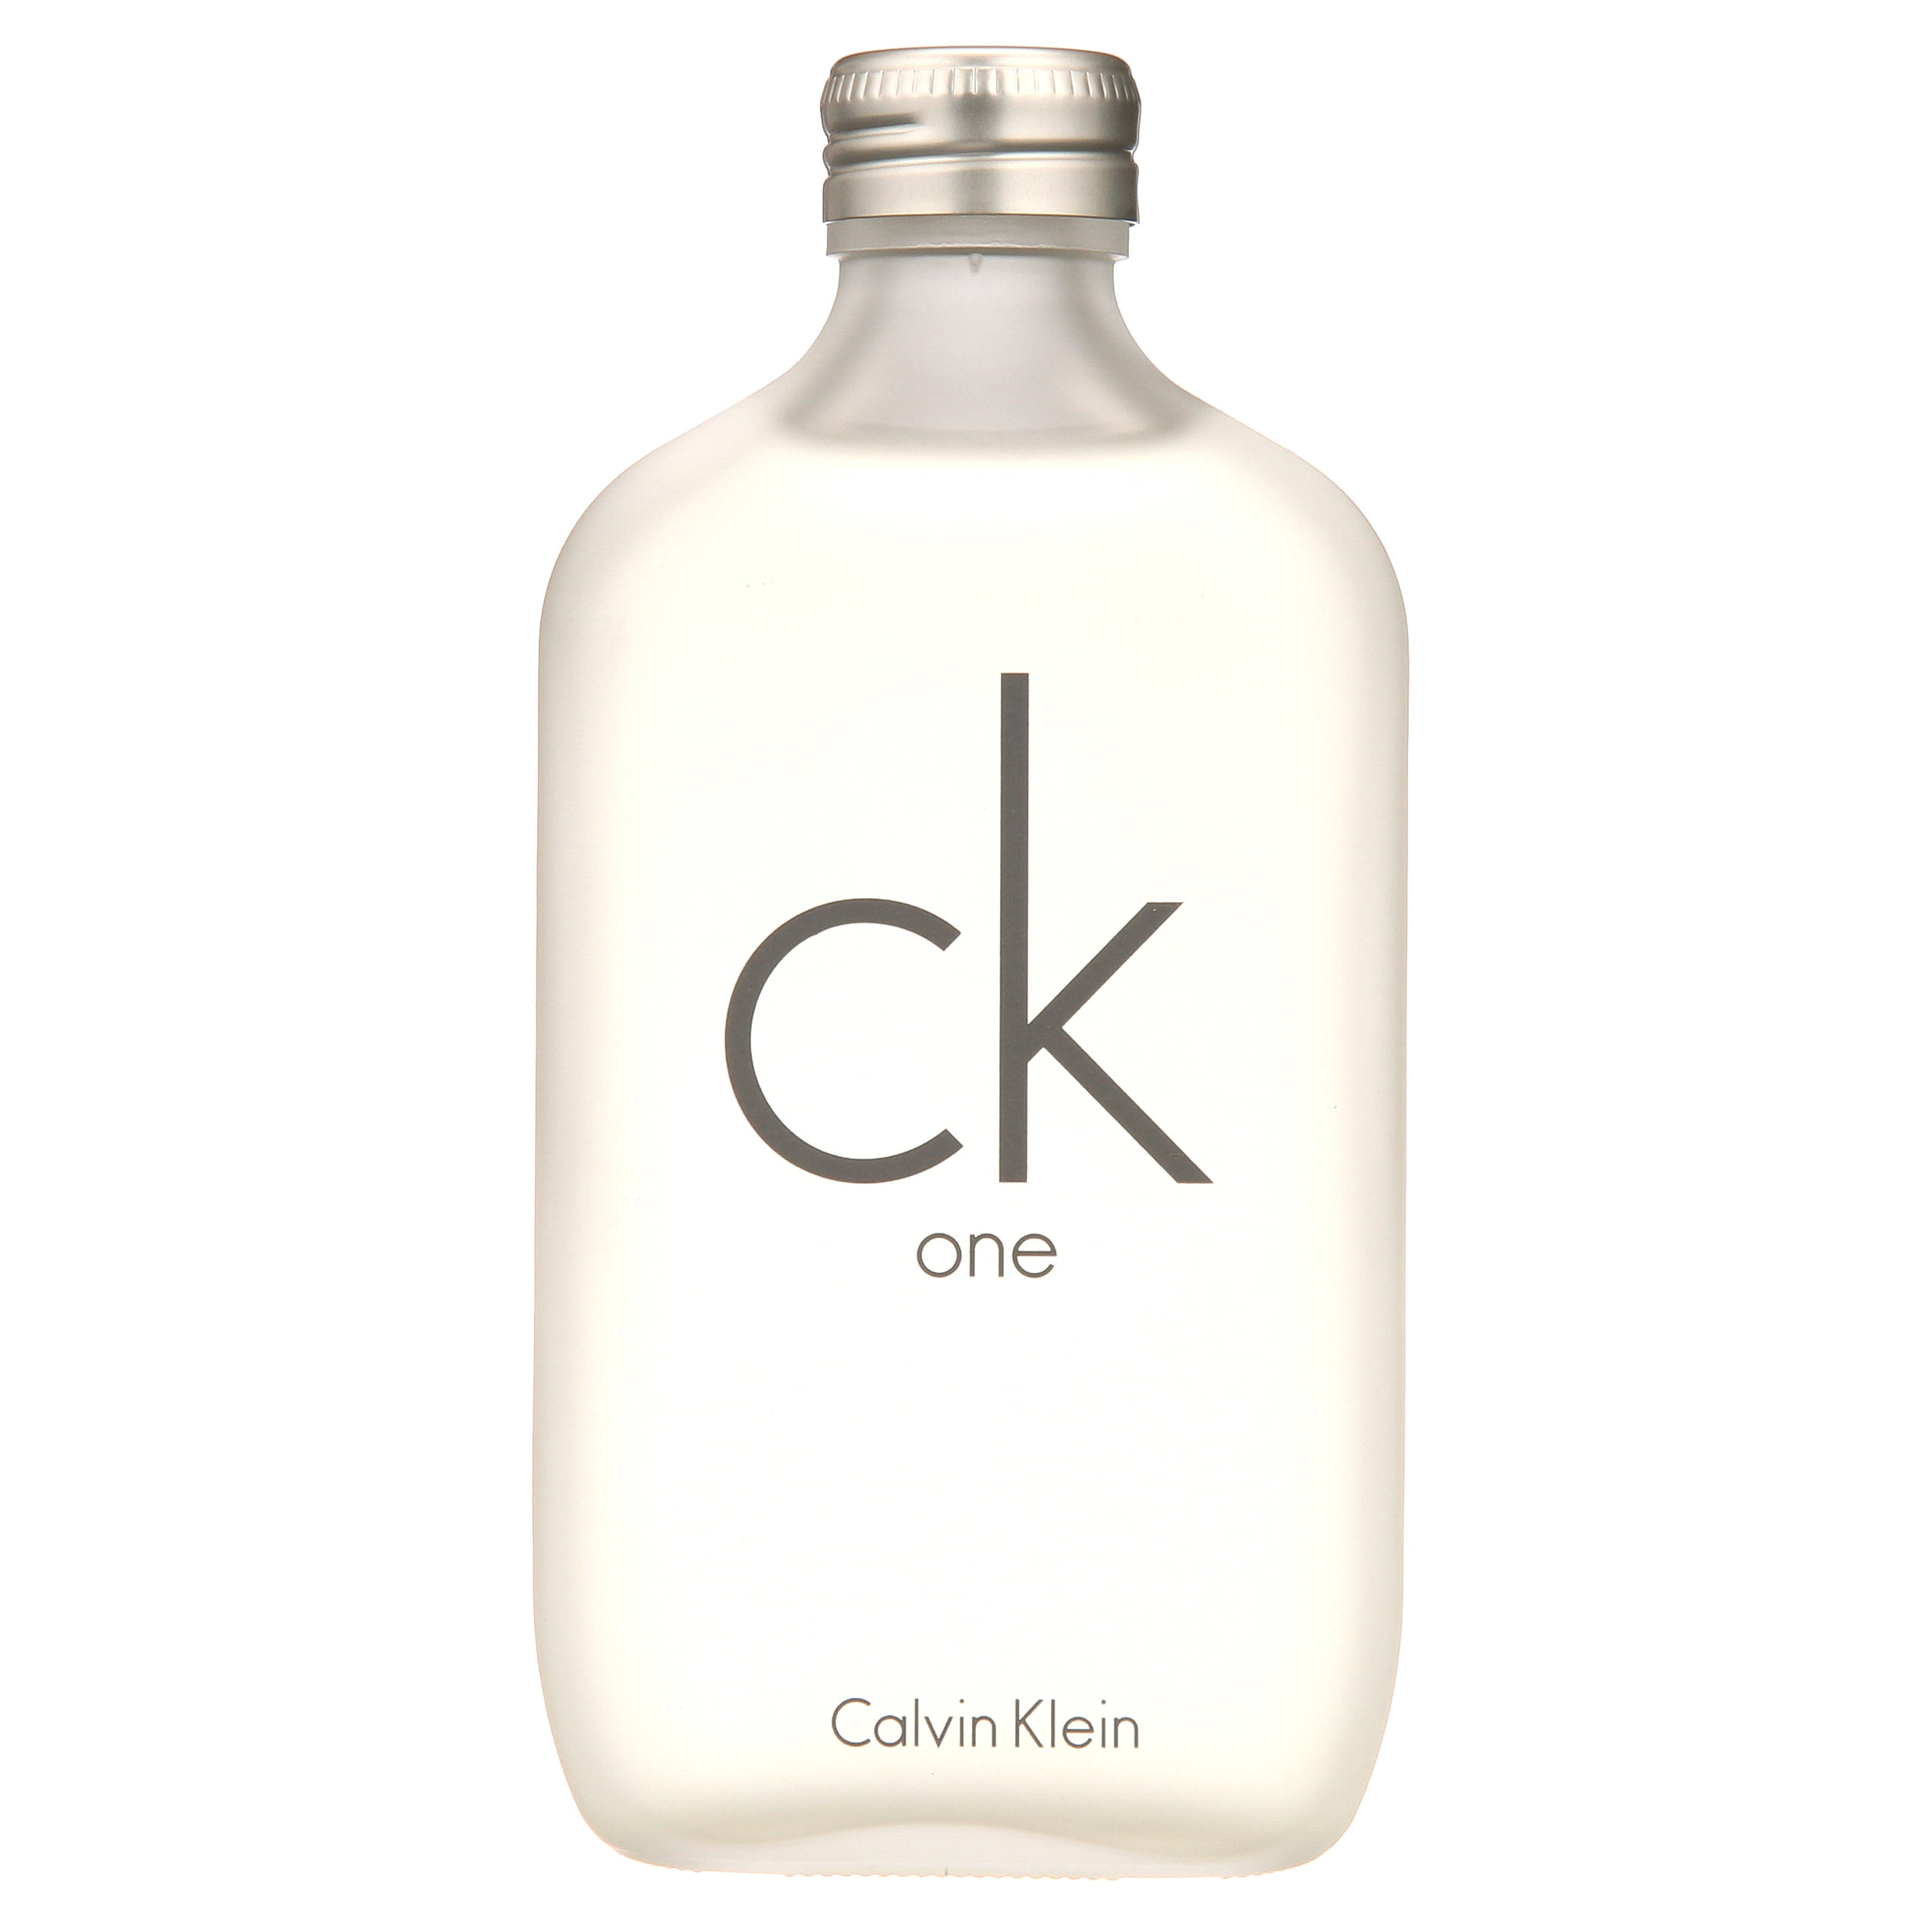 Calvin Klein Beauty CK One Eau de Toilette, Unisex Fragrance, 6.7 Oz 